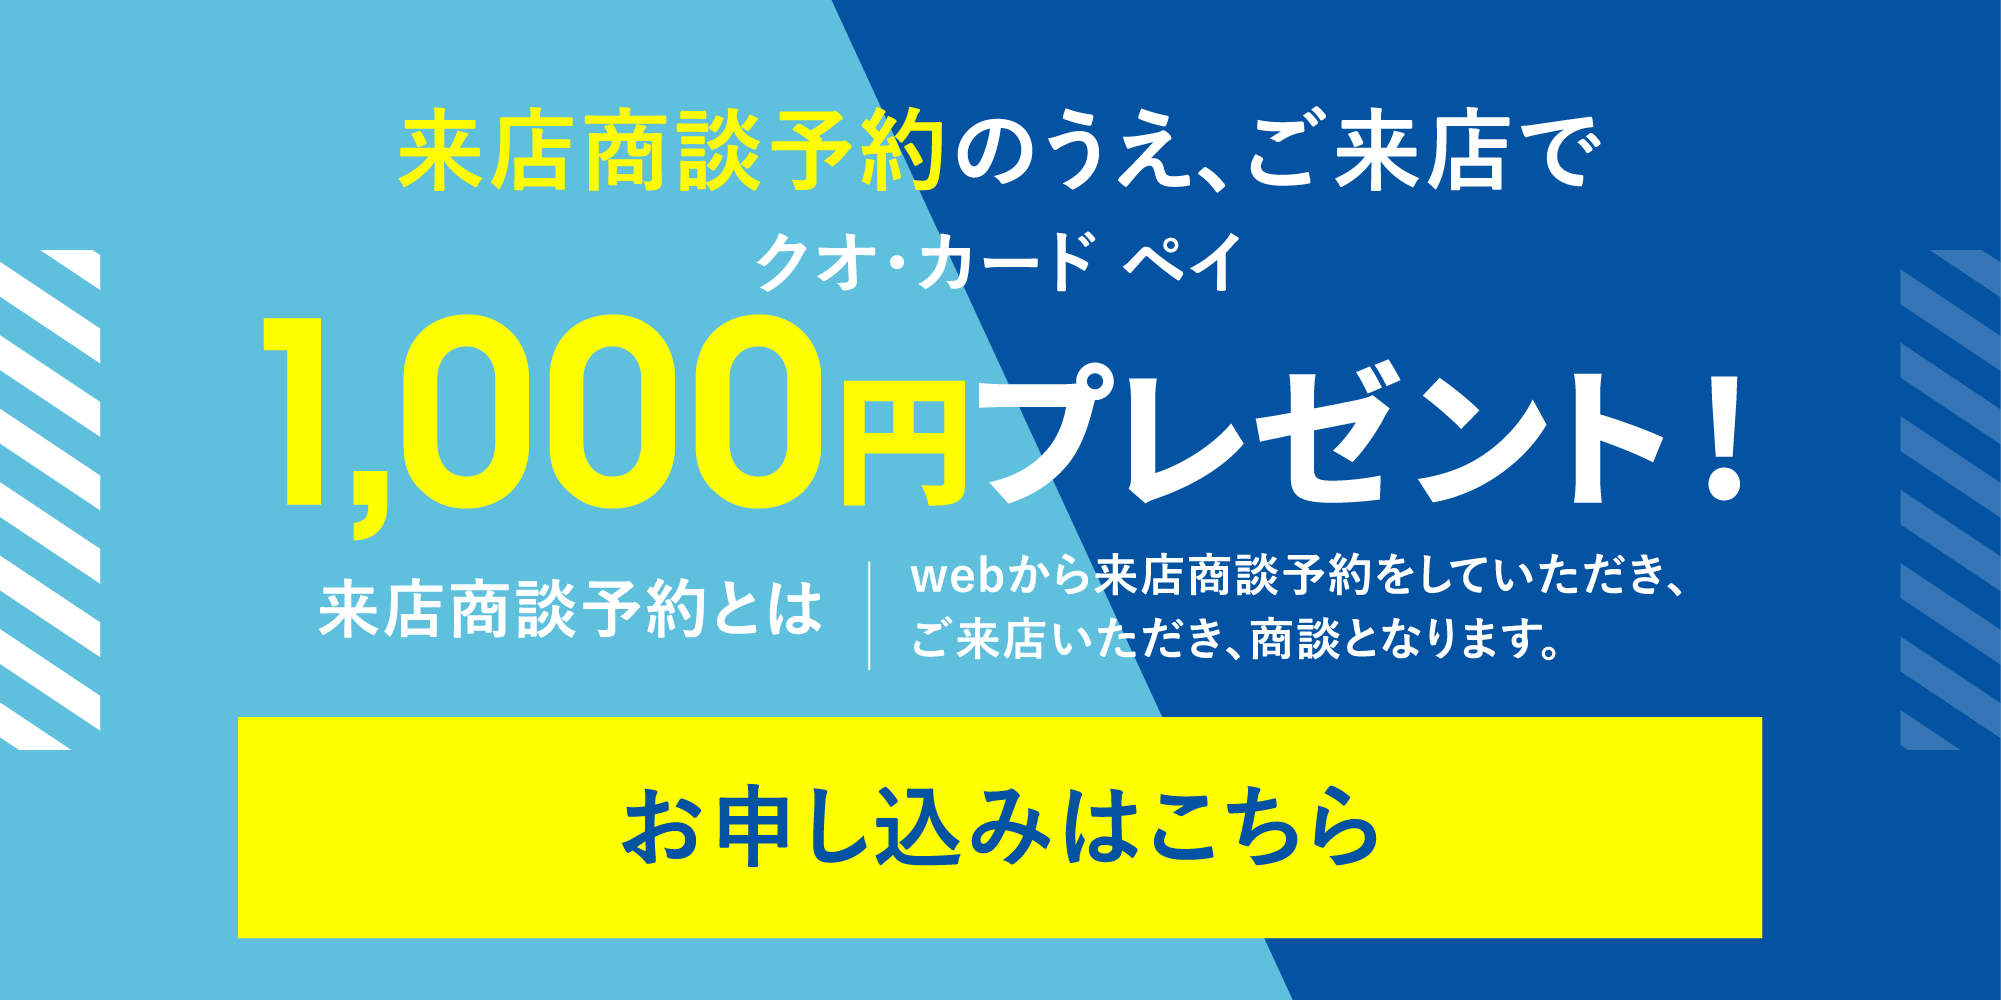 デジタルギフト2000円分プレゼント